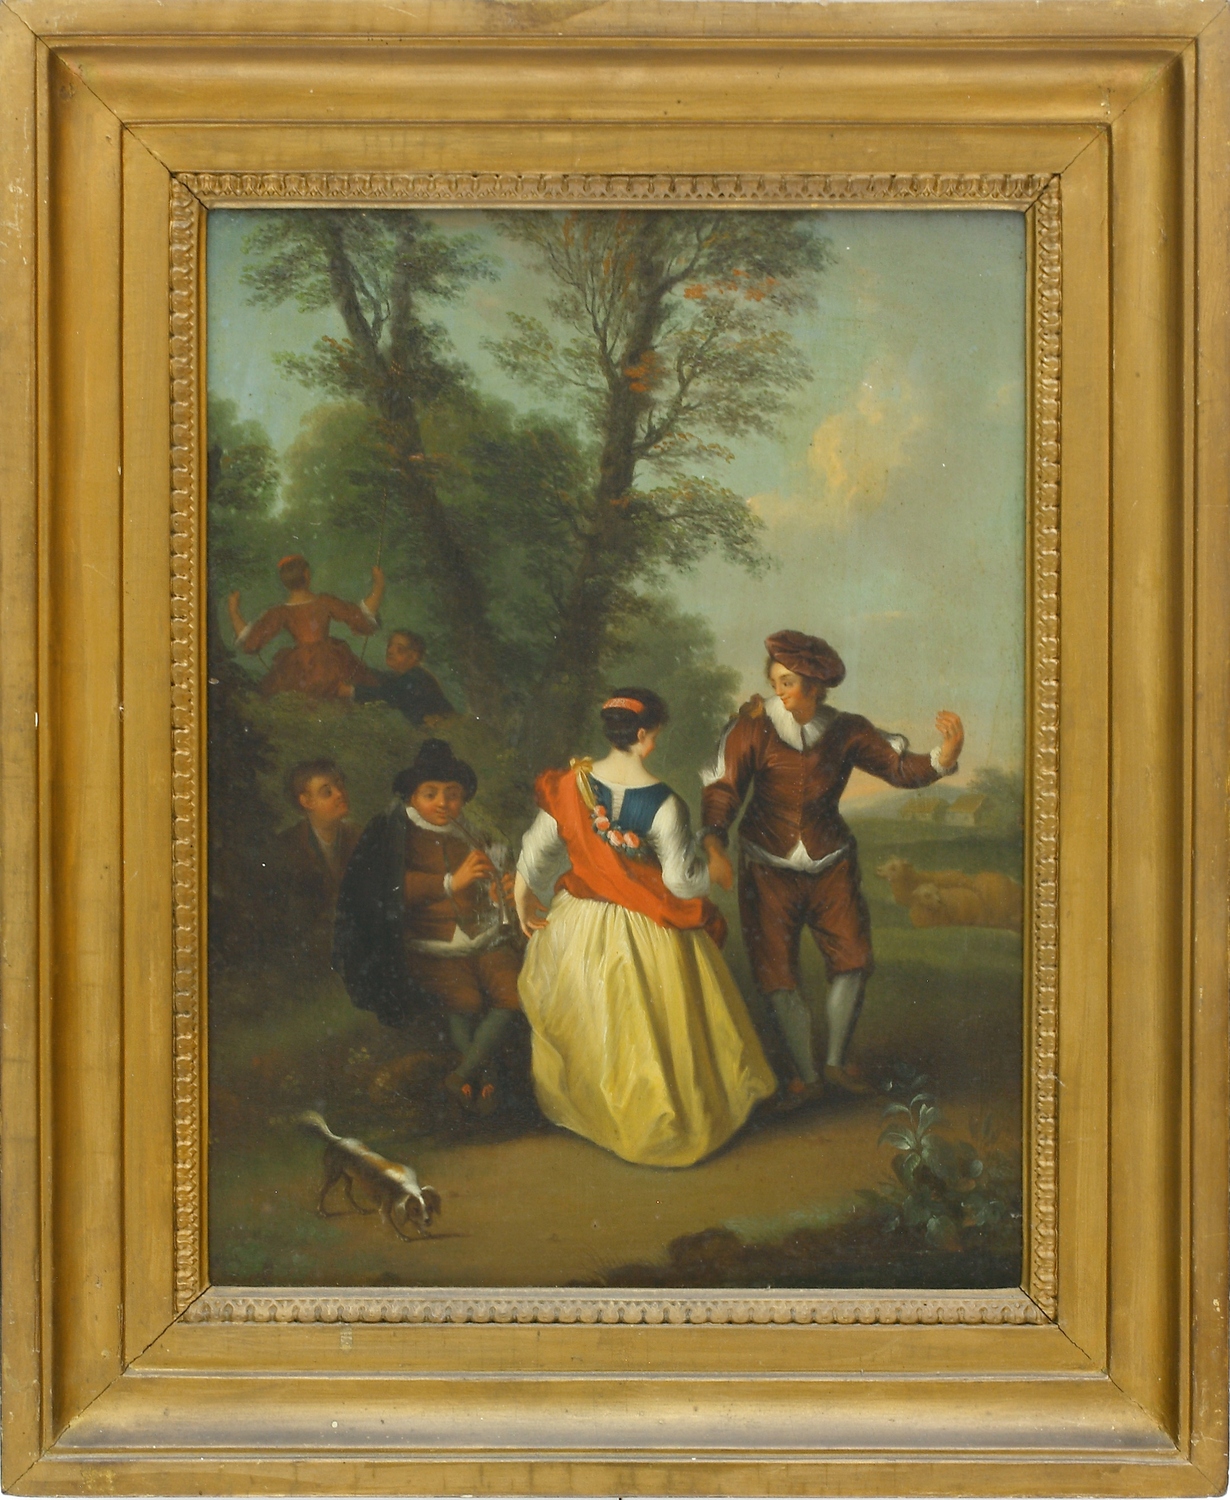 Auktionshaus Quentin Berlin  Gemälde FranzÃ¶sische Schule  nach Antoine Watteau  Le Vielleur oder TÃ¤nzchen im Park